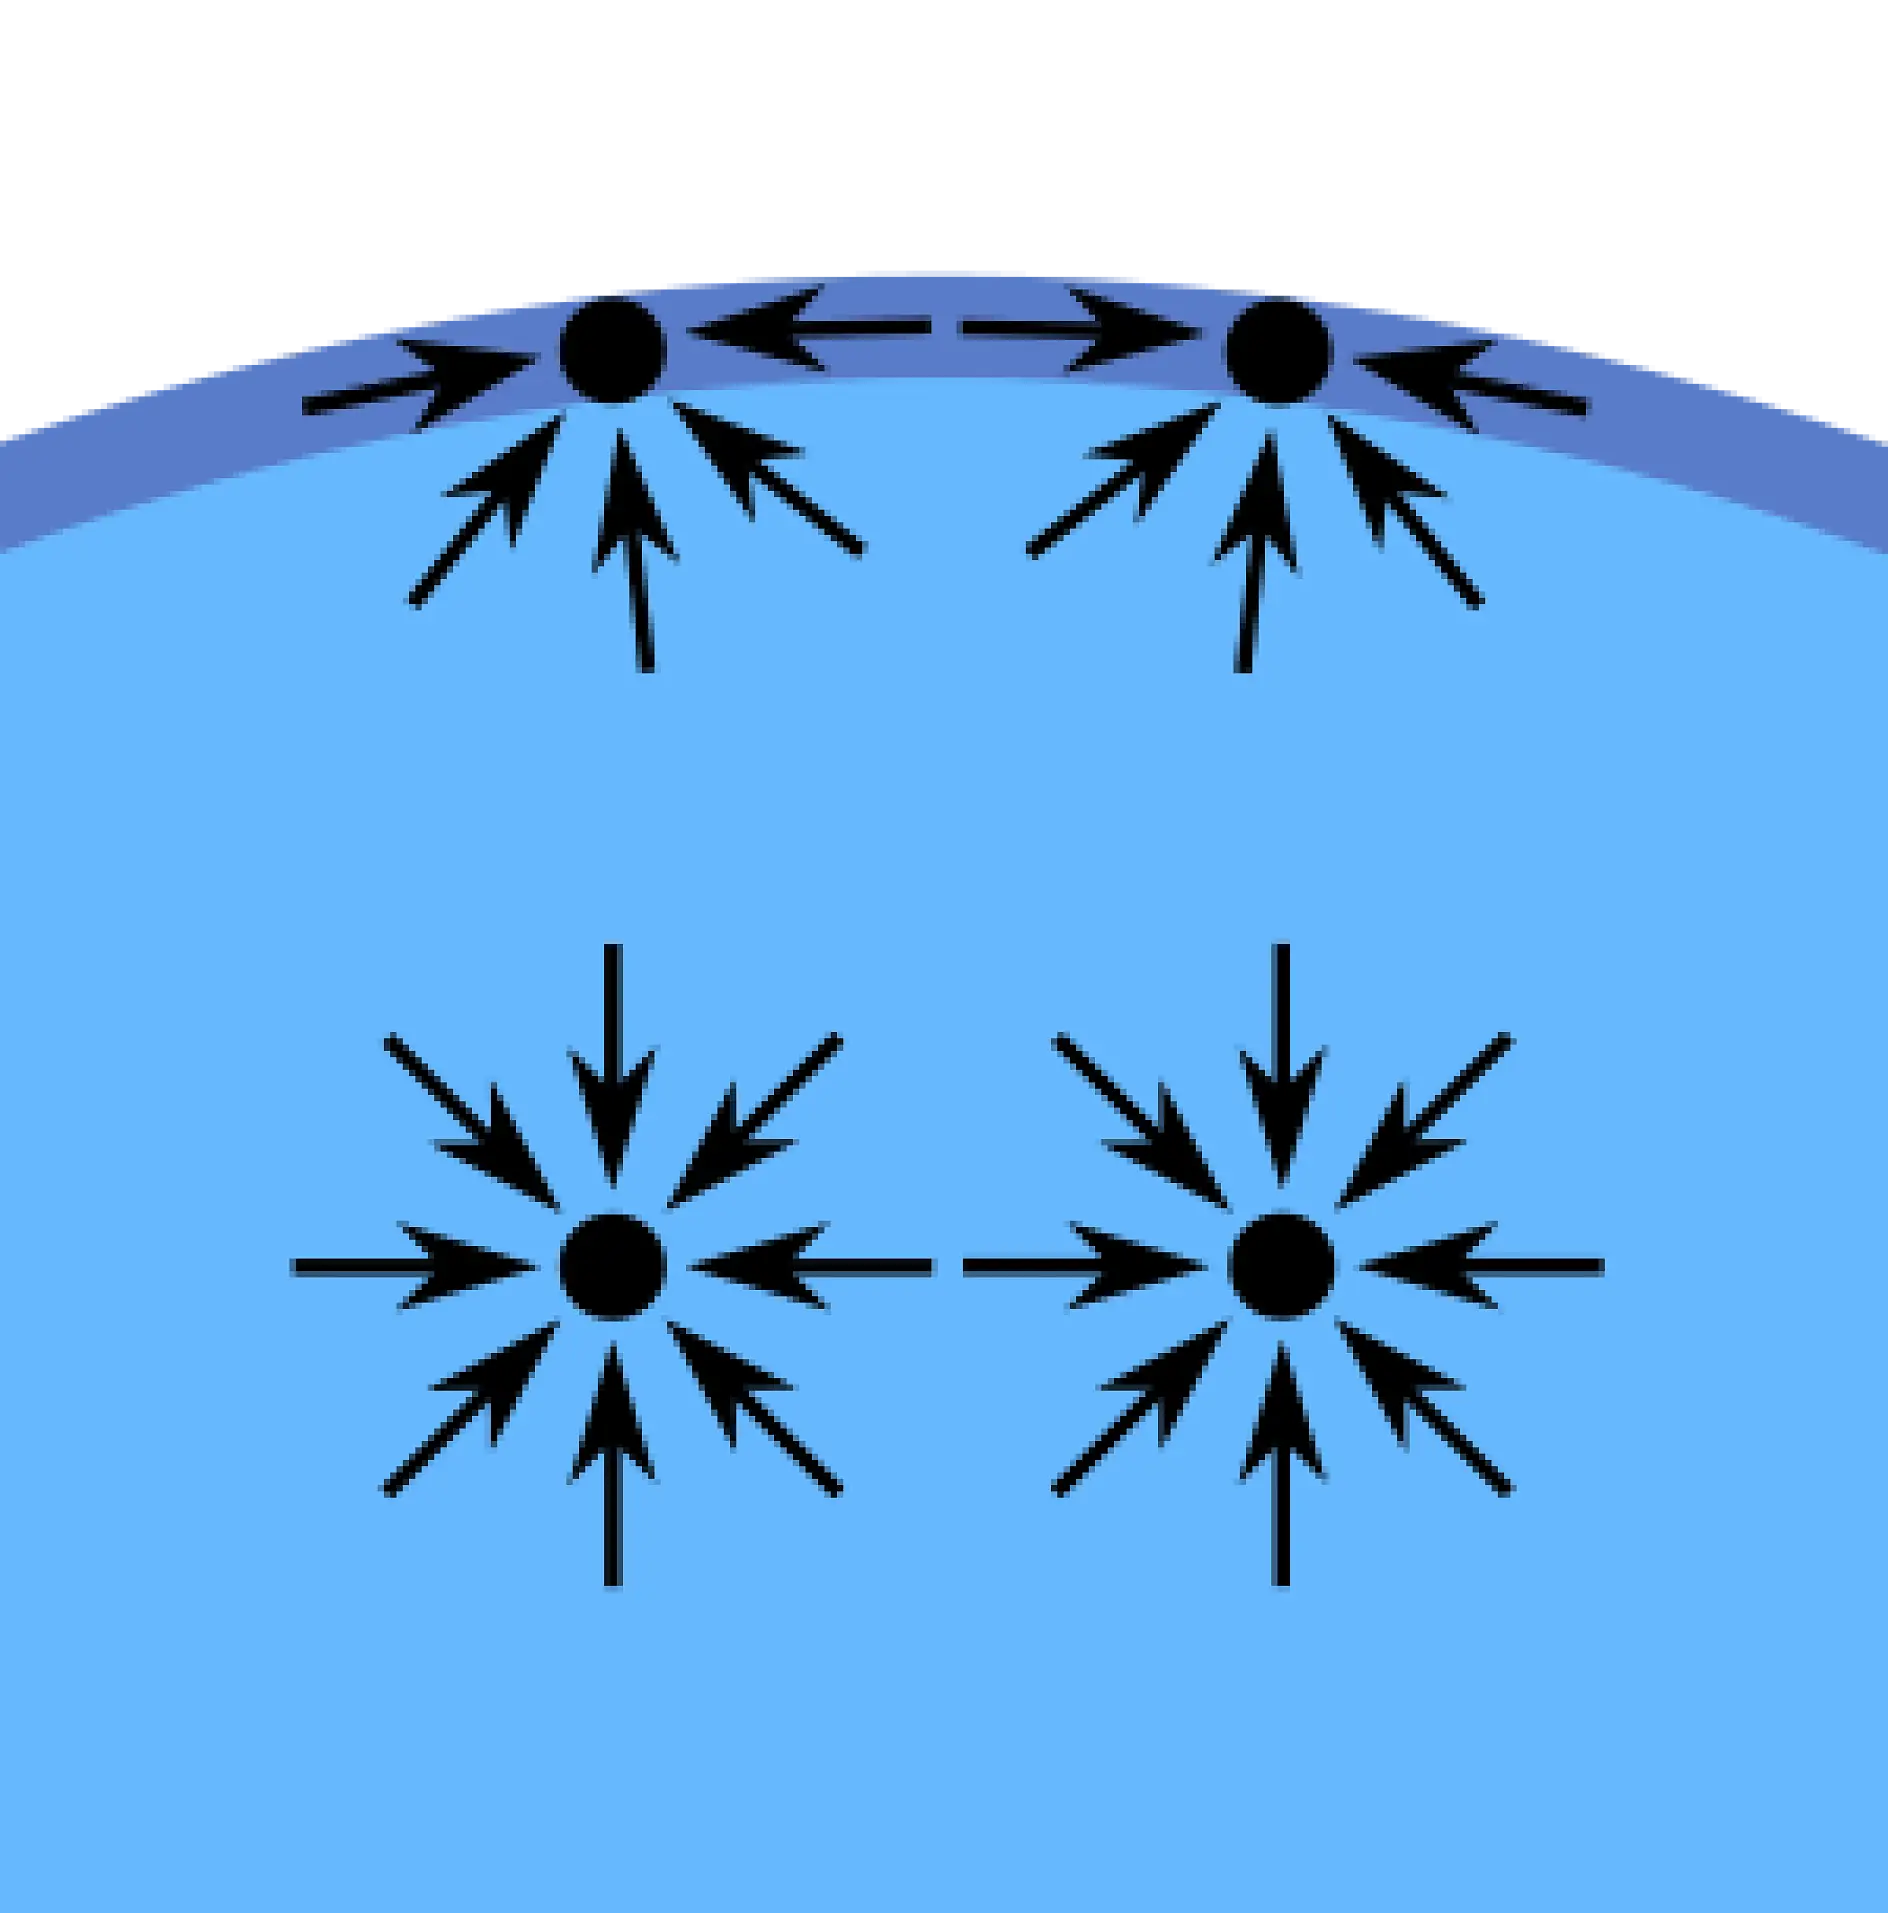 Les forces de cohésion, en d’autres termes l’attraction (interne), entre les molécules de liquide créent le phénomène appelé « tension de surface ». Les molécules à la surface d’un verre d’eau par exemple n’ont pas d’autres molécules d’eau sur tous les côtés. Ainsi, elles sont attirées vers l’intérieur de l’eau, la cohésion est plus forte avec les molécules d’eau près d’elles et en-dessous d’elles. Cette attraction est plus grande que celle vers les molécules d’air au-dessus d’elles. À la fin, la force intérieure crée la surface qui sépare l’eau et l’air.